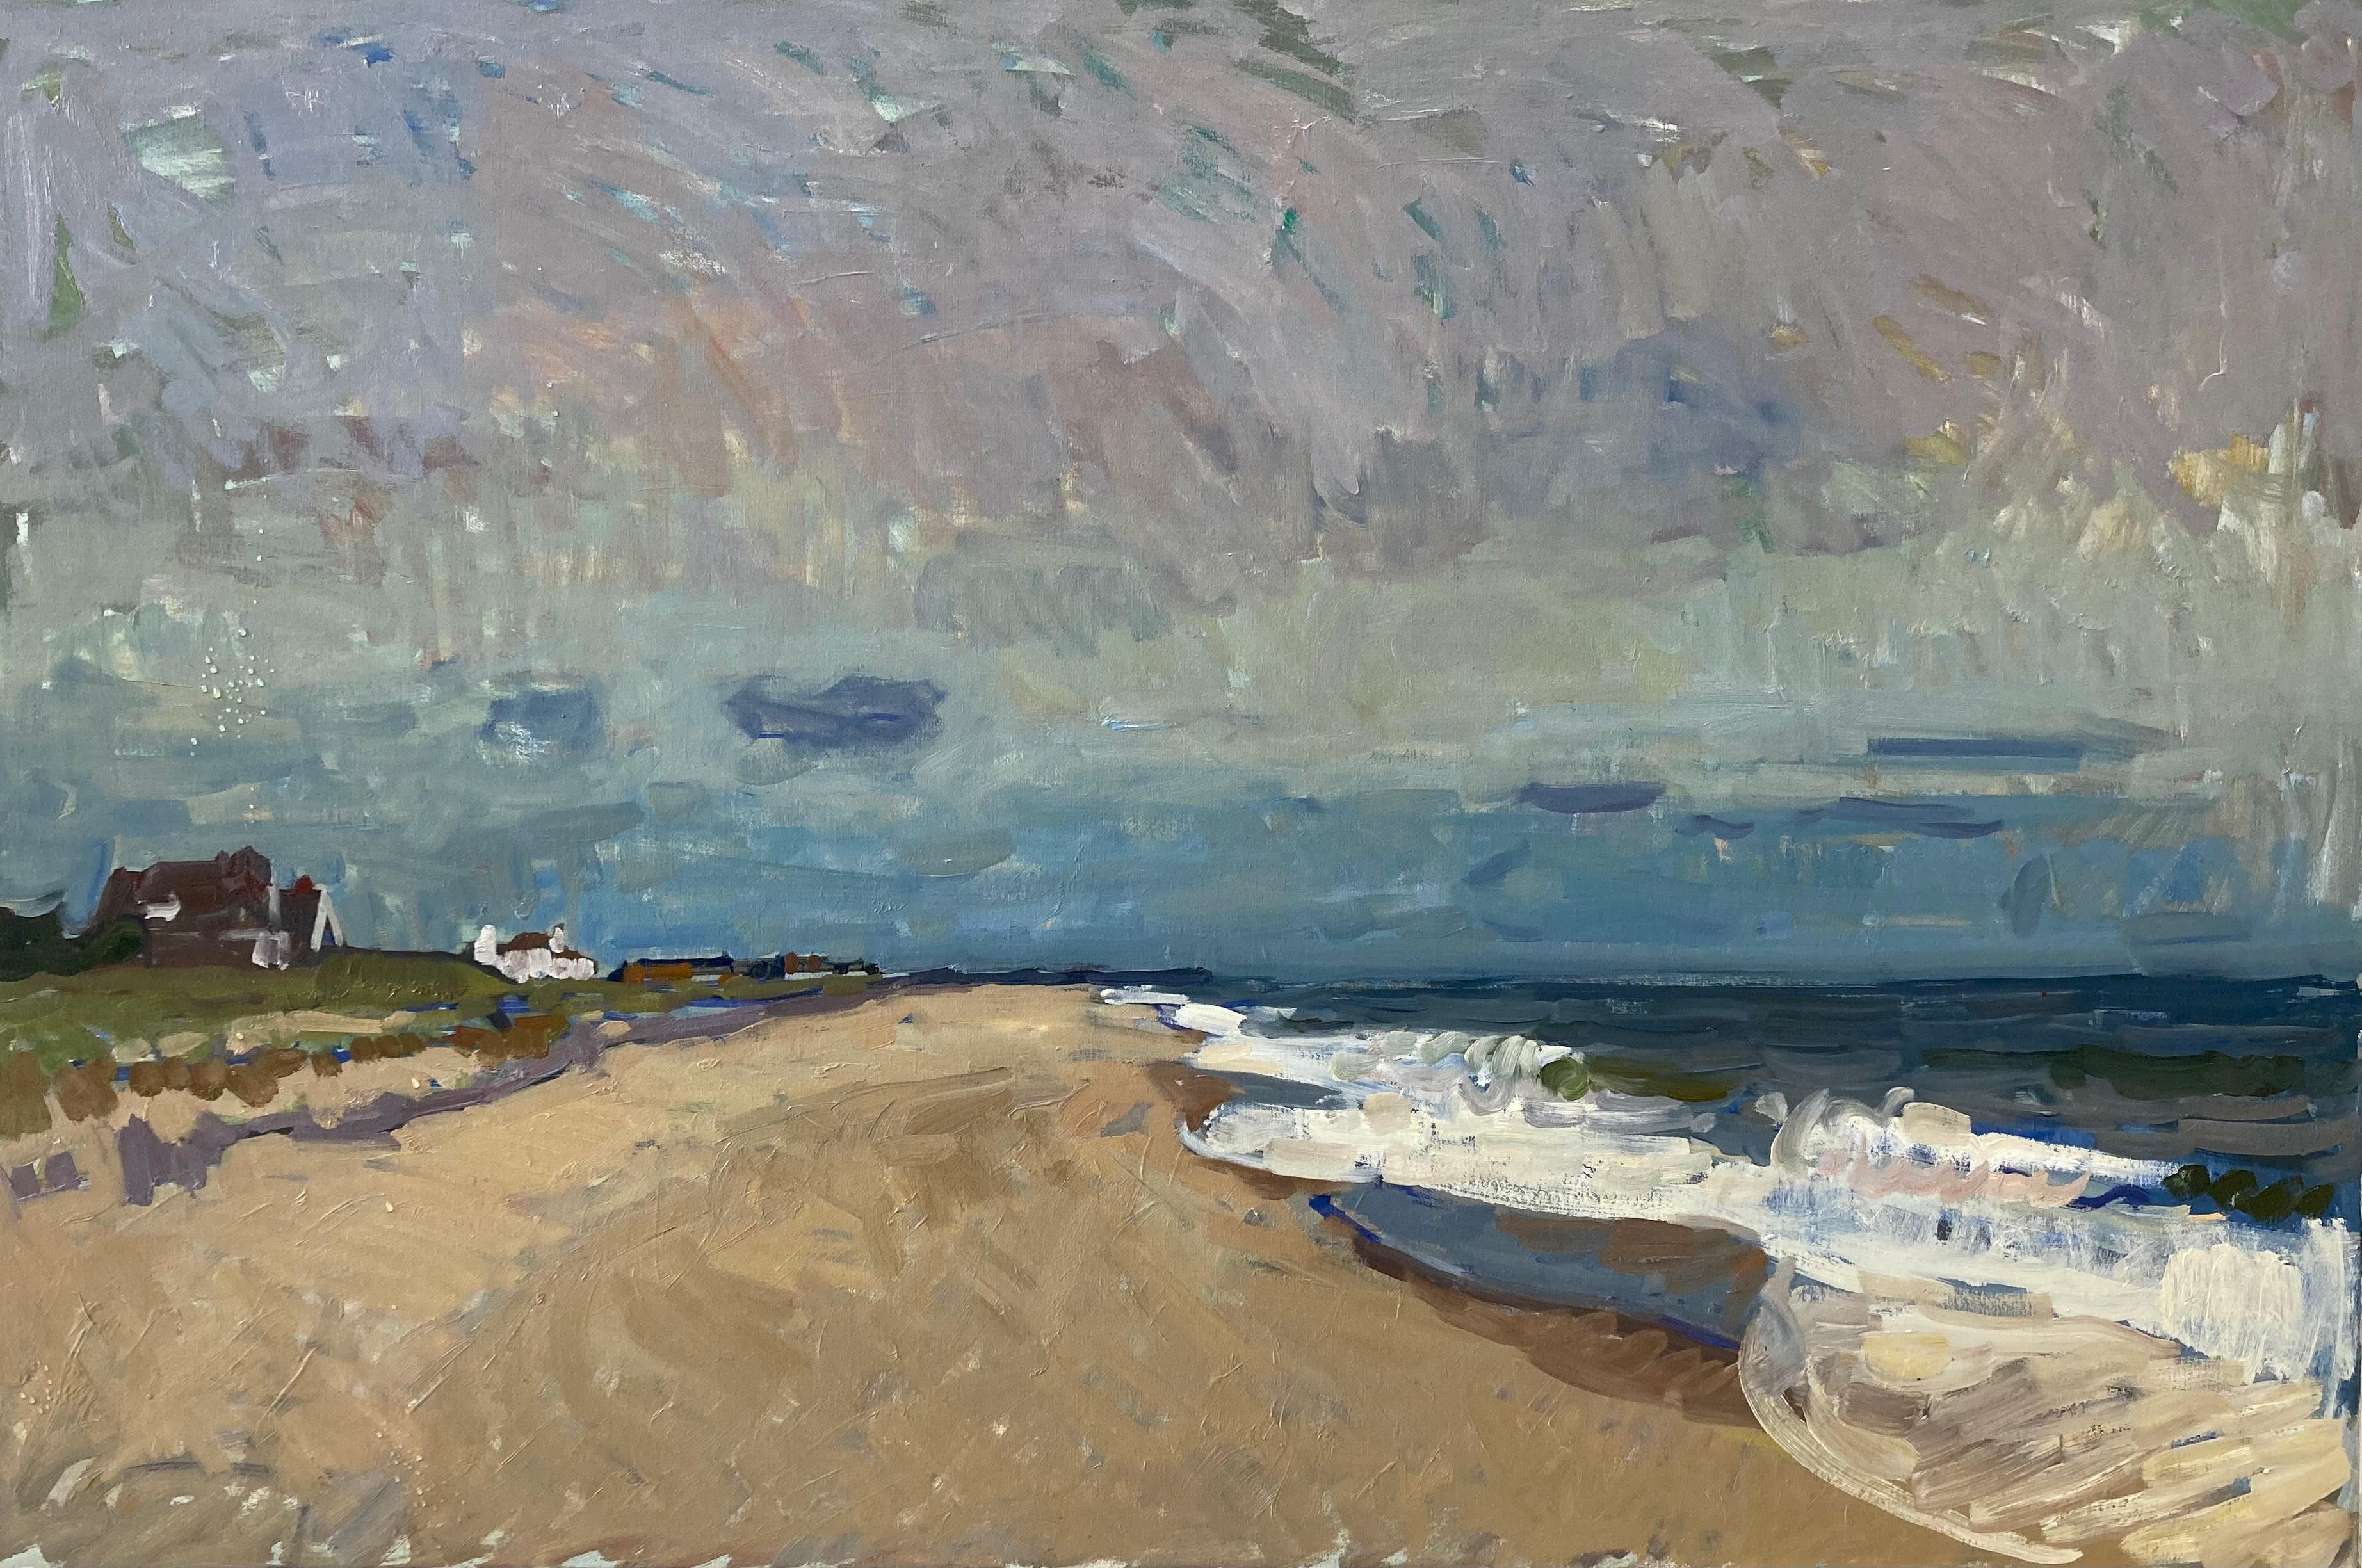 Landscape Painting Ben Fenske - « Peter's Pond, septembre », vue impressionniste de la plage de Sagaponack en plein air